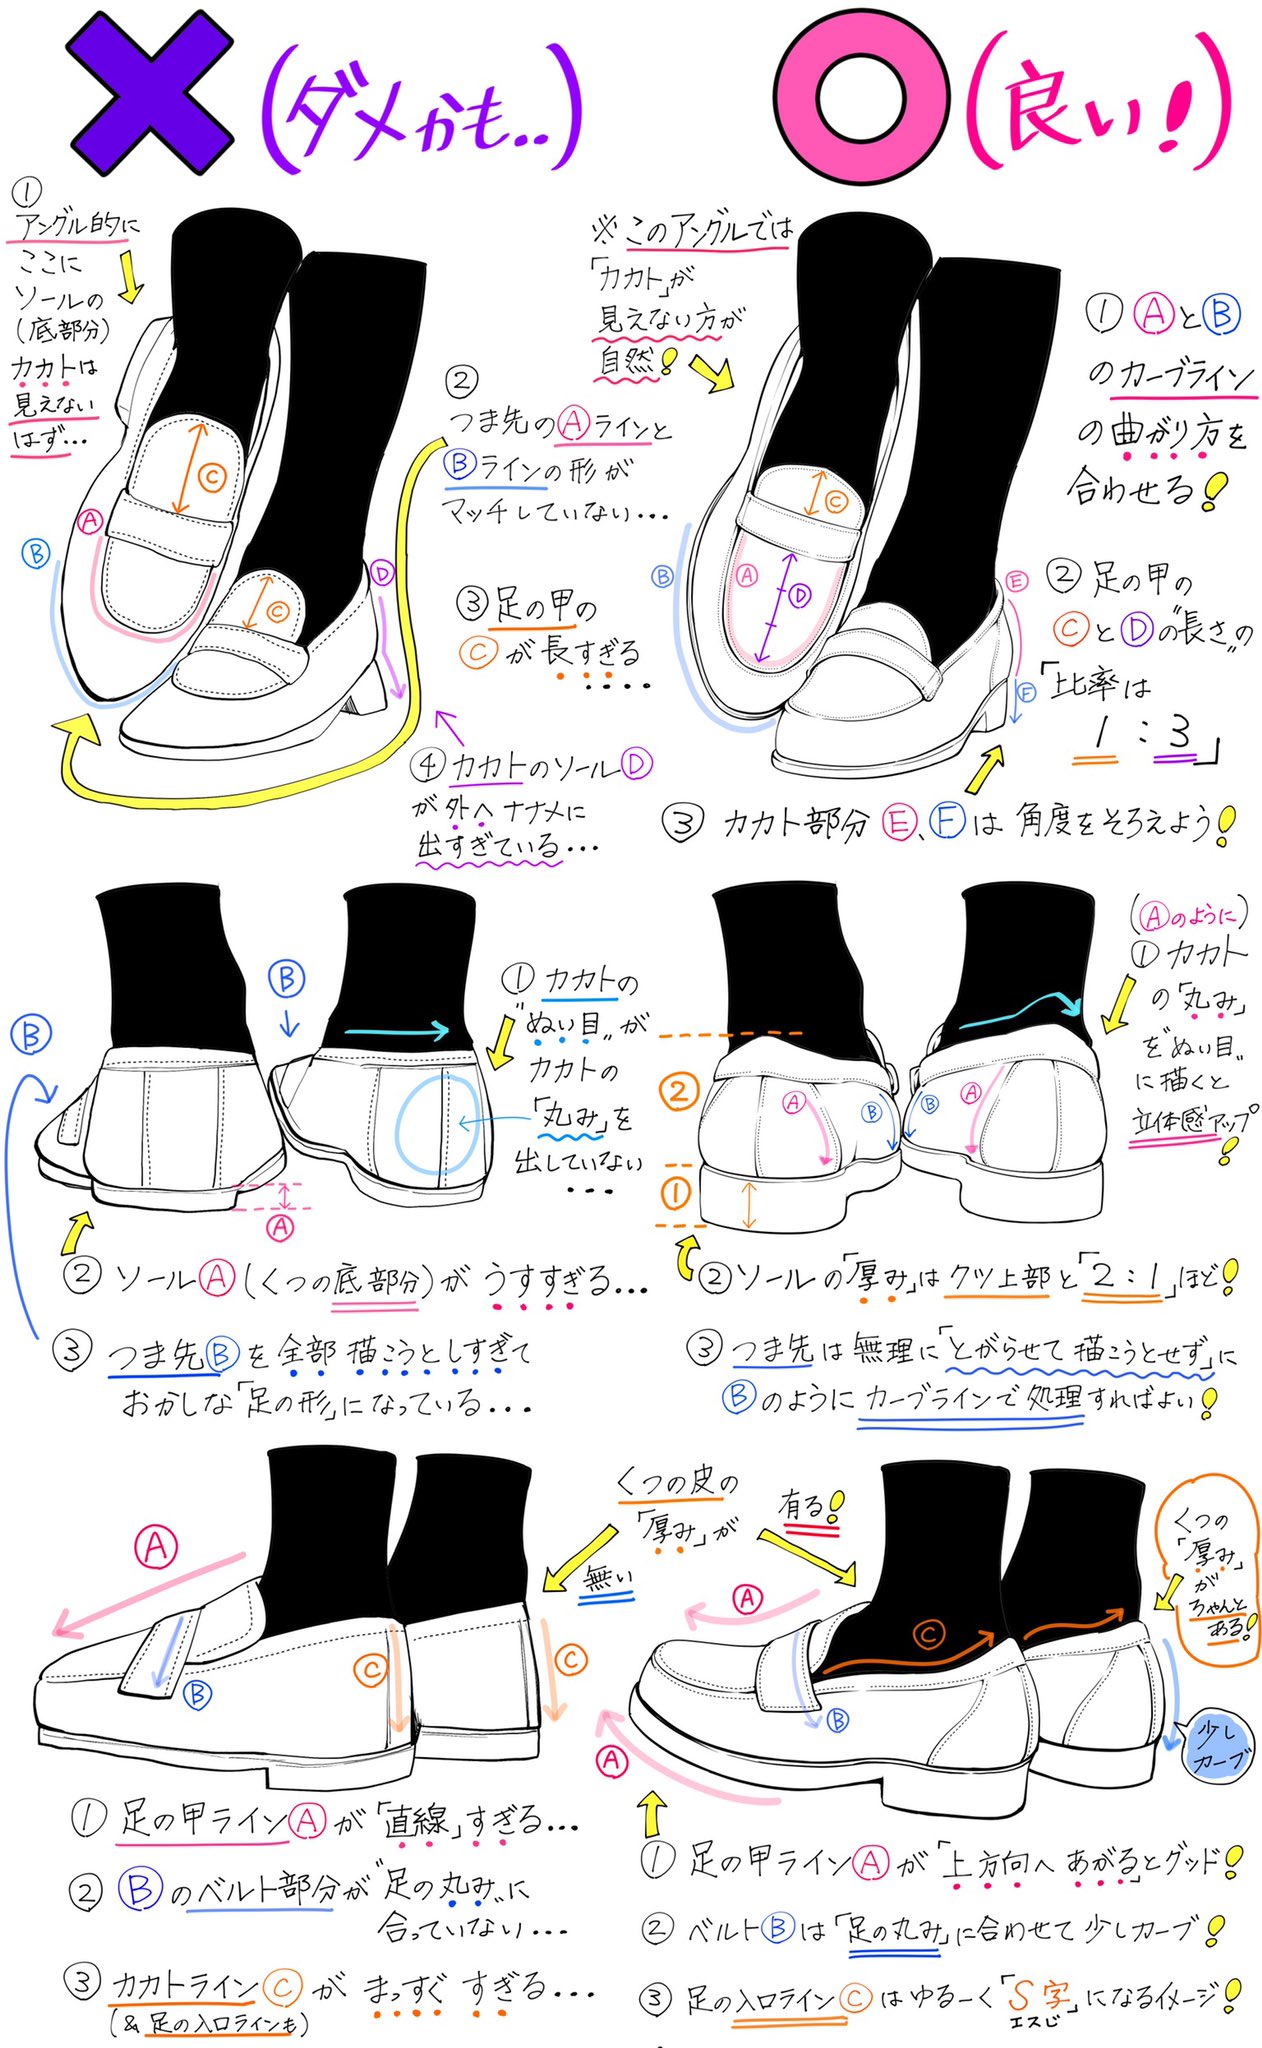 吉村拓也 イラスト講座 V Twitter ローファー靴の描き方 学生っぽい靴 が上達したいときの ダメかも と 良いかも T Co 3uvokzhc5k Twitter